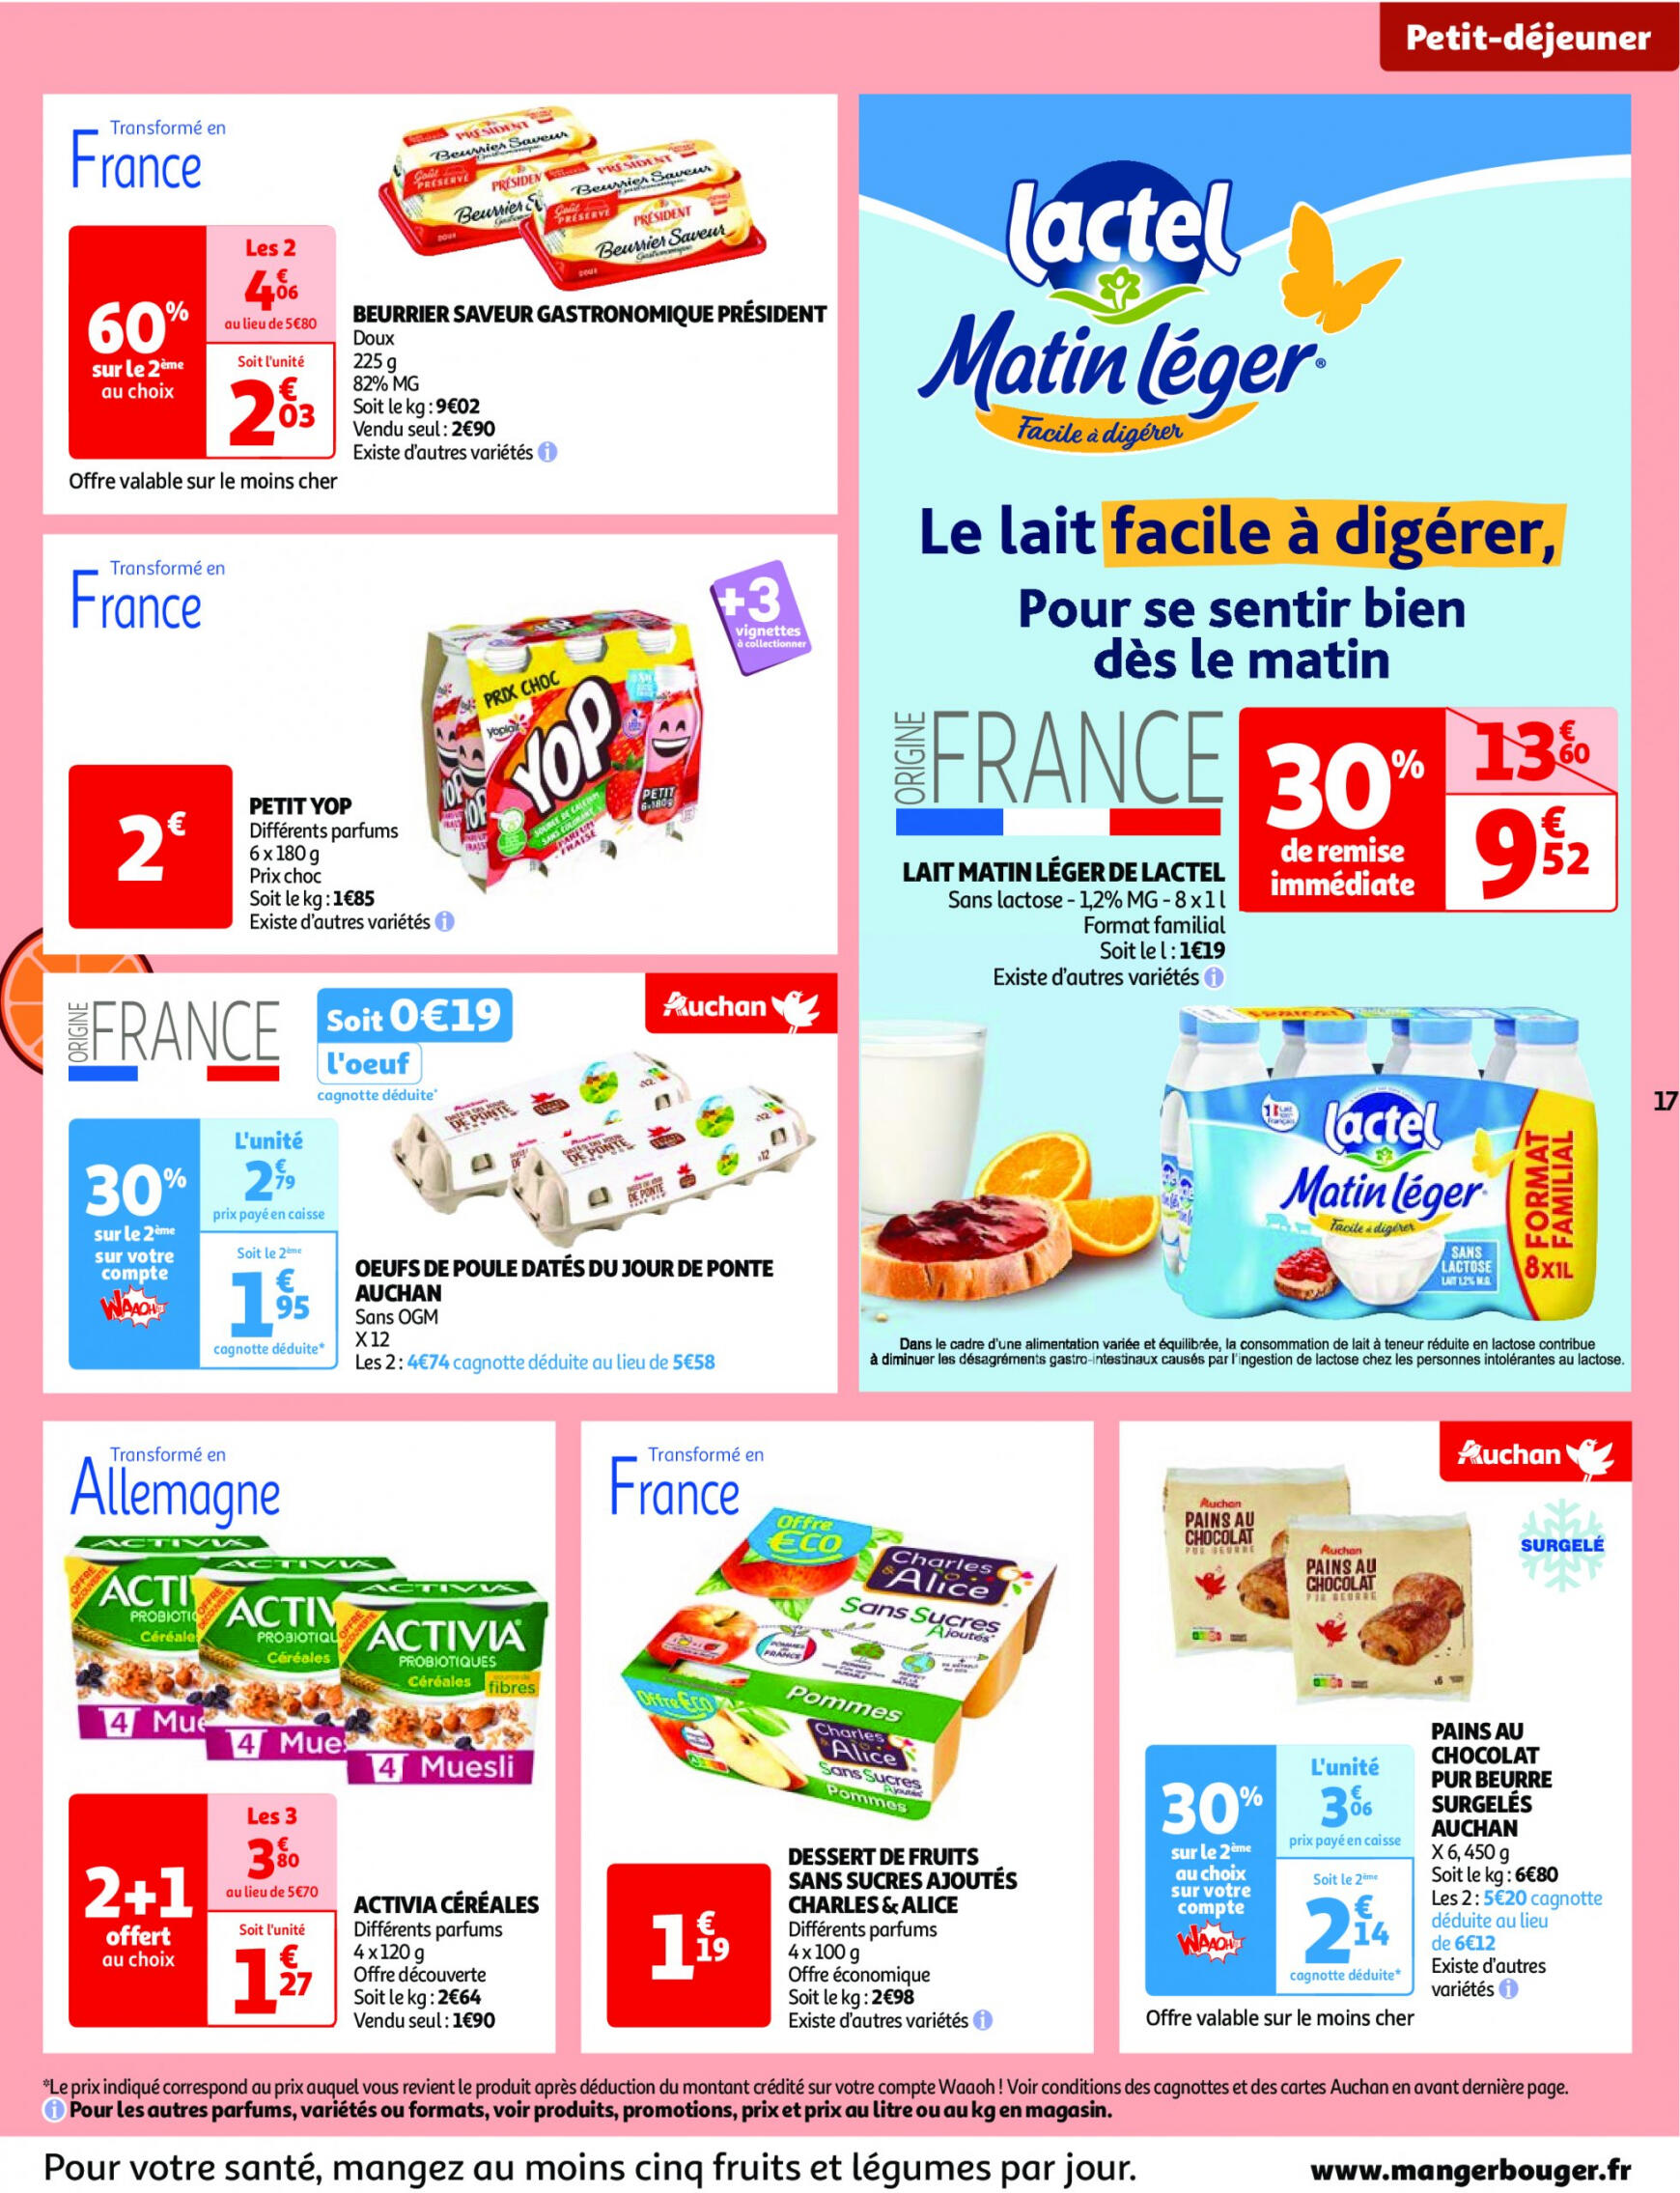 auchan - Auchan - Nos surgelés ont tout bon folder huidig 14.05. - 21.05. - page: 17